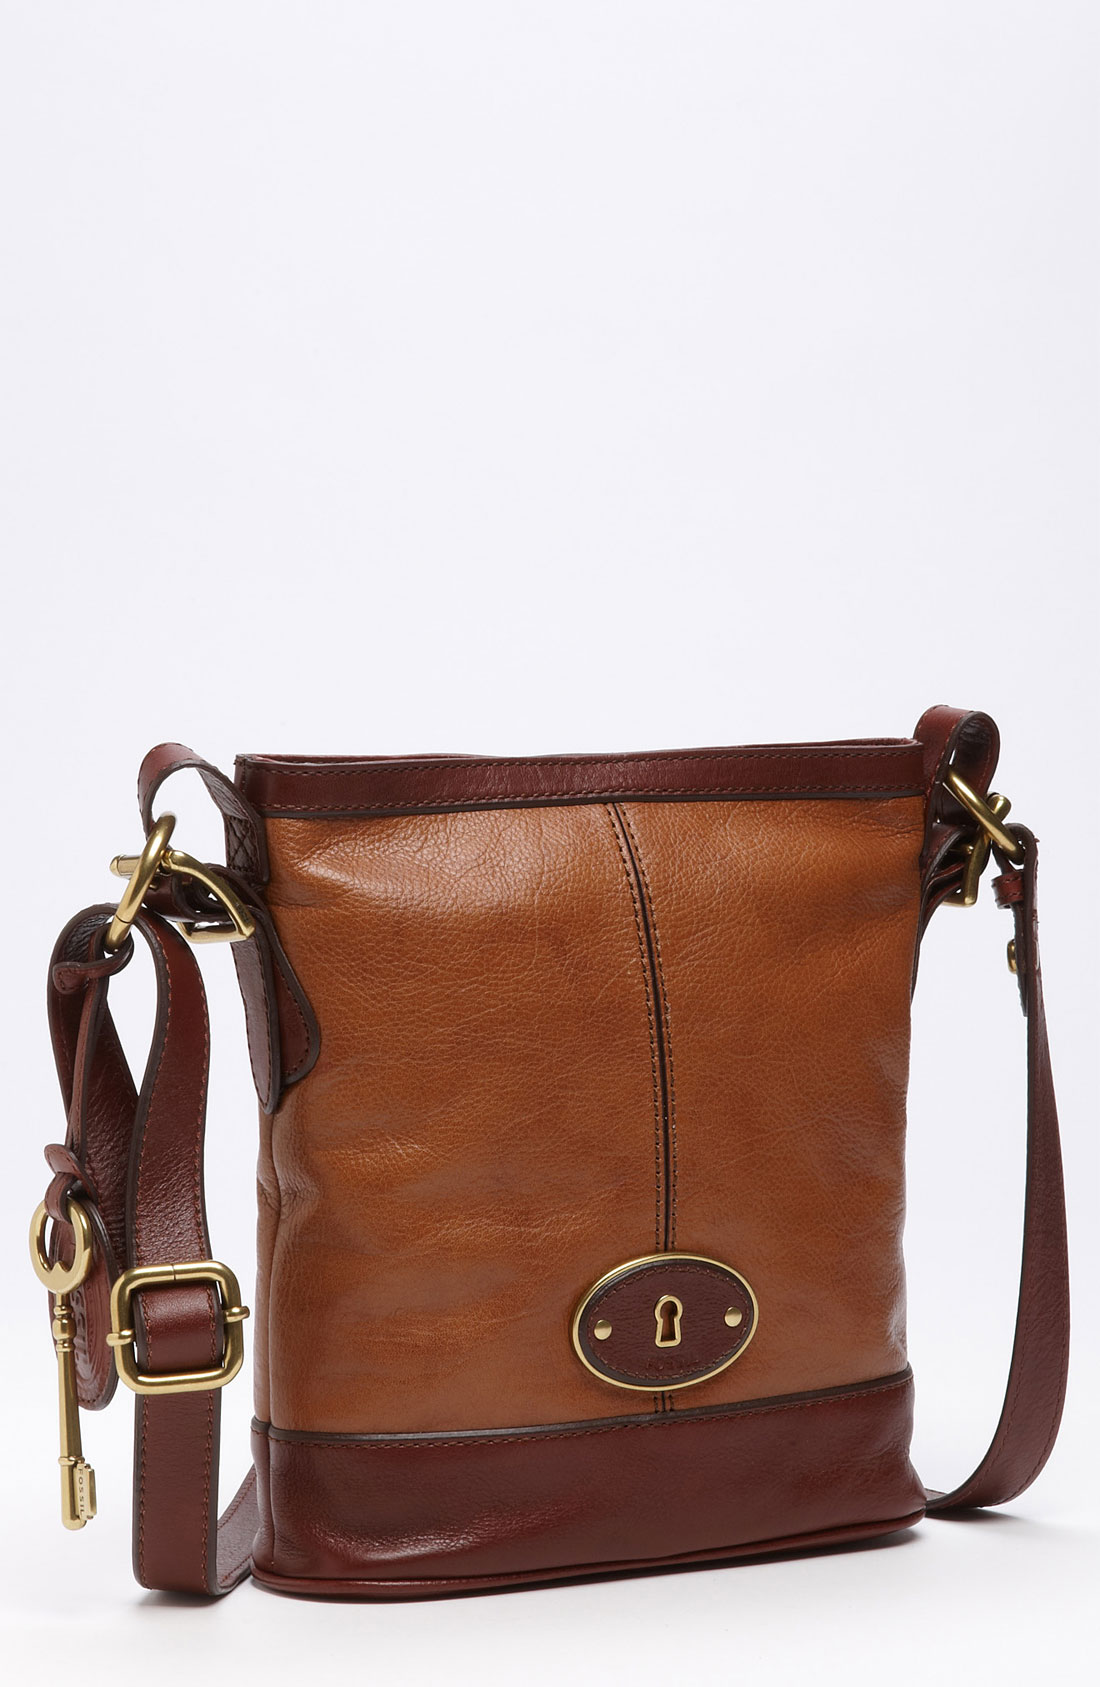 Fossil Vintage Reissue Crossbody Bag in Brown (brown multi) | Lyst